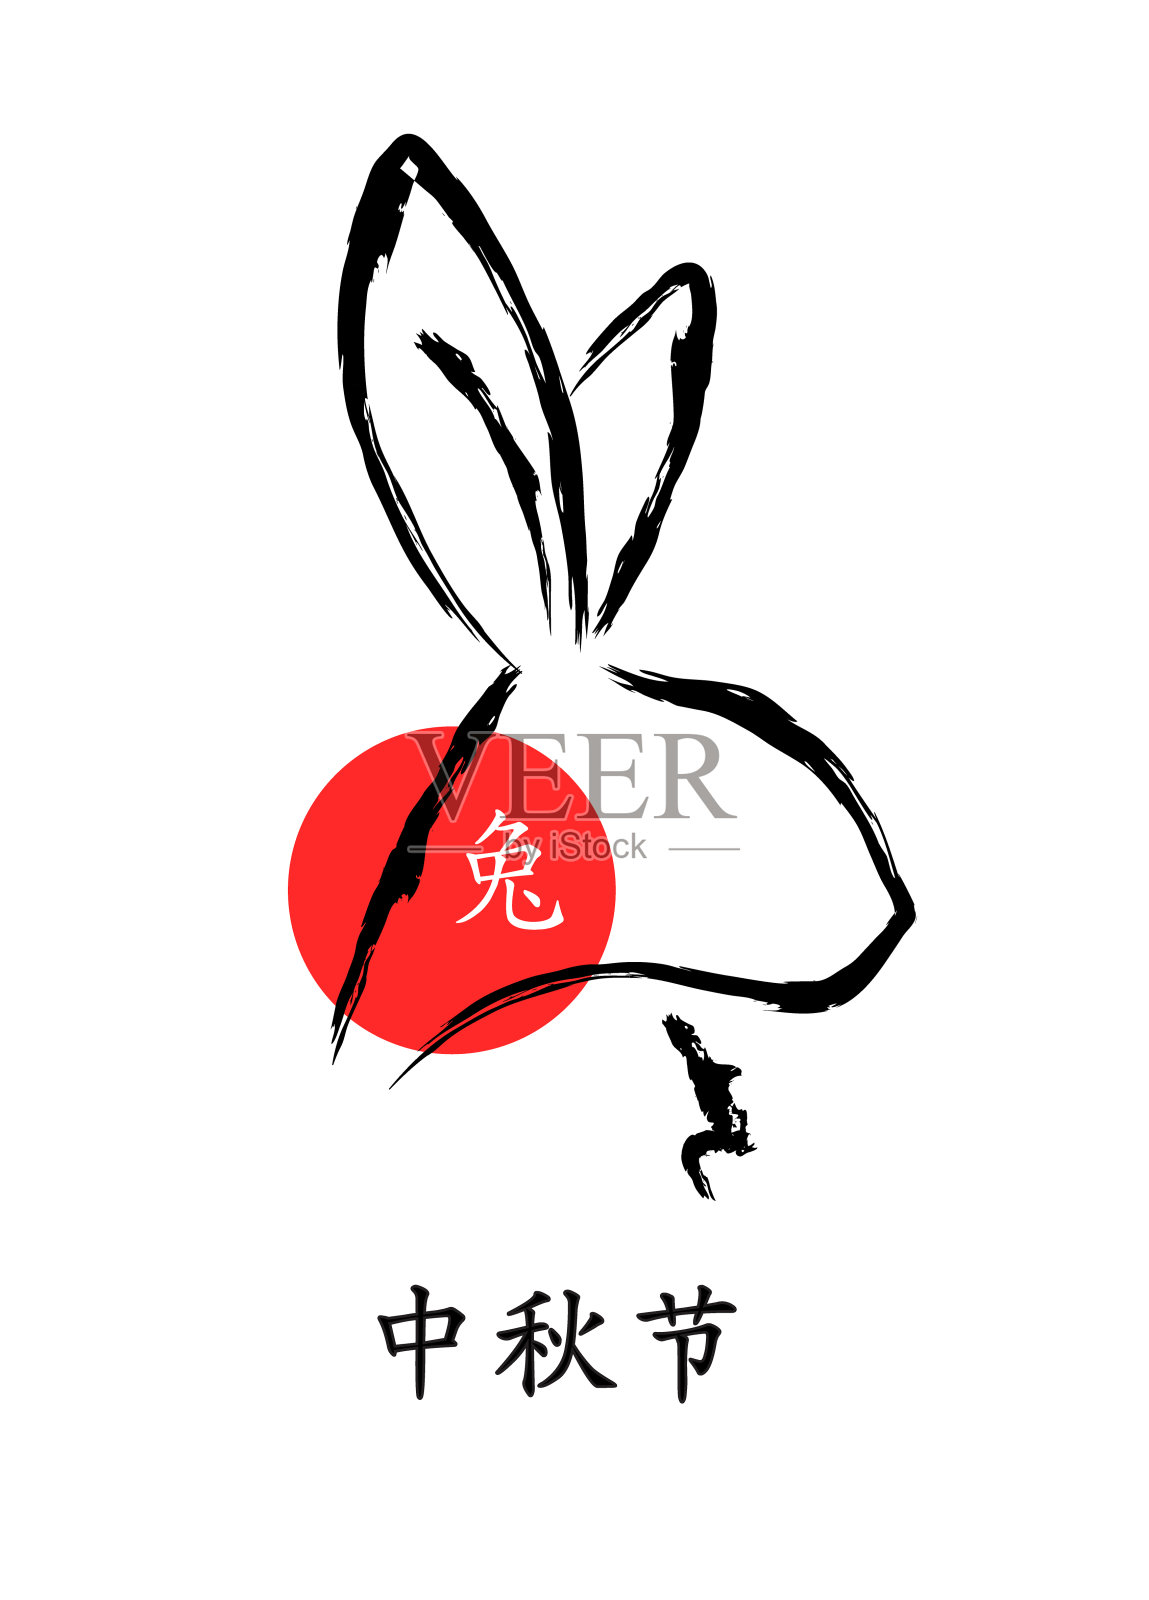 中国书法风格的兔头贺卡。矢量图设计元素图片